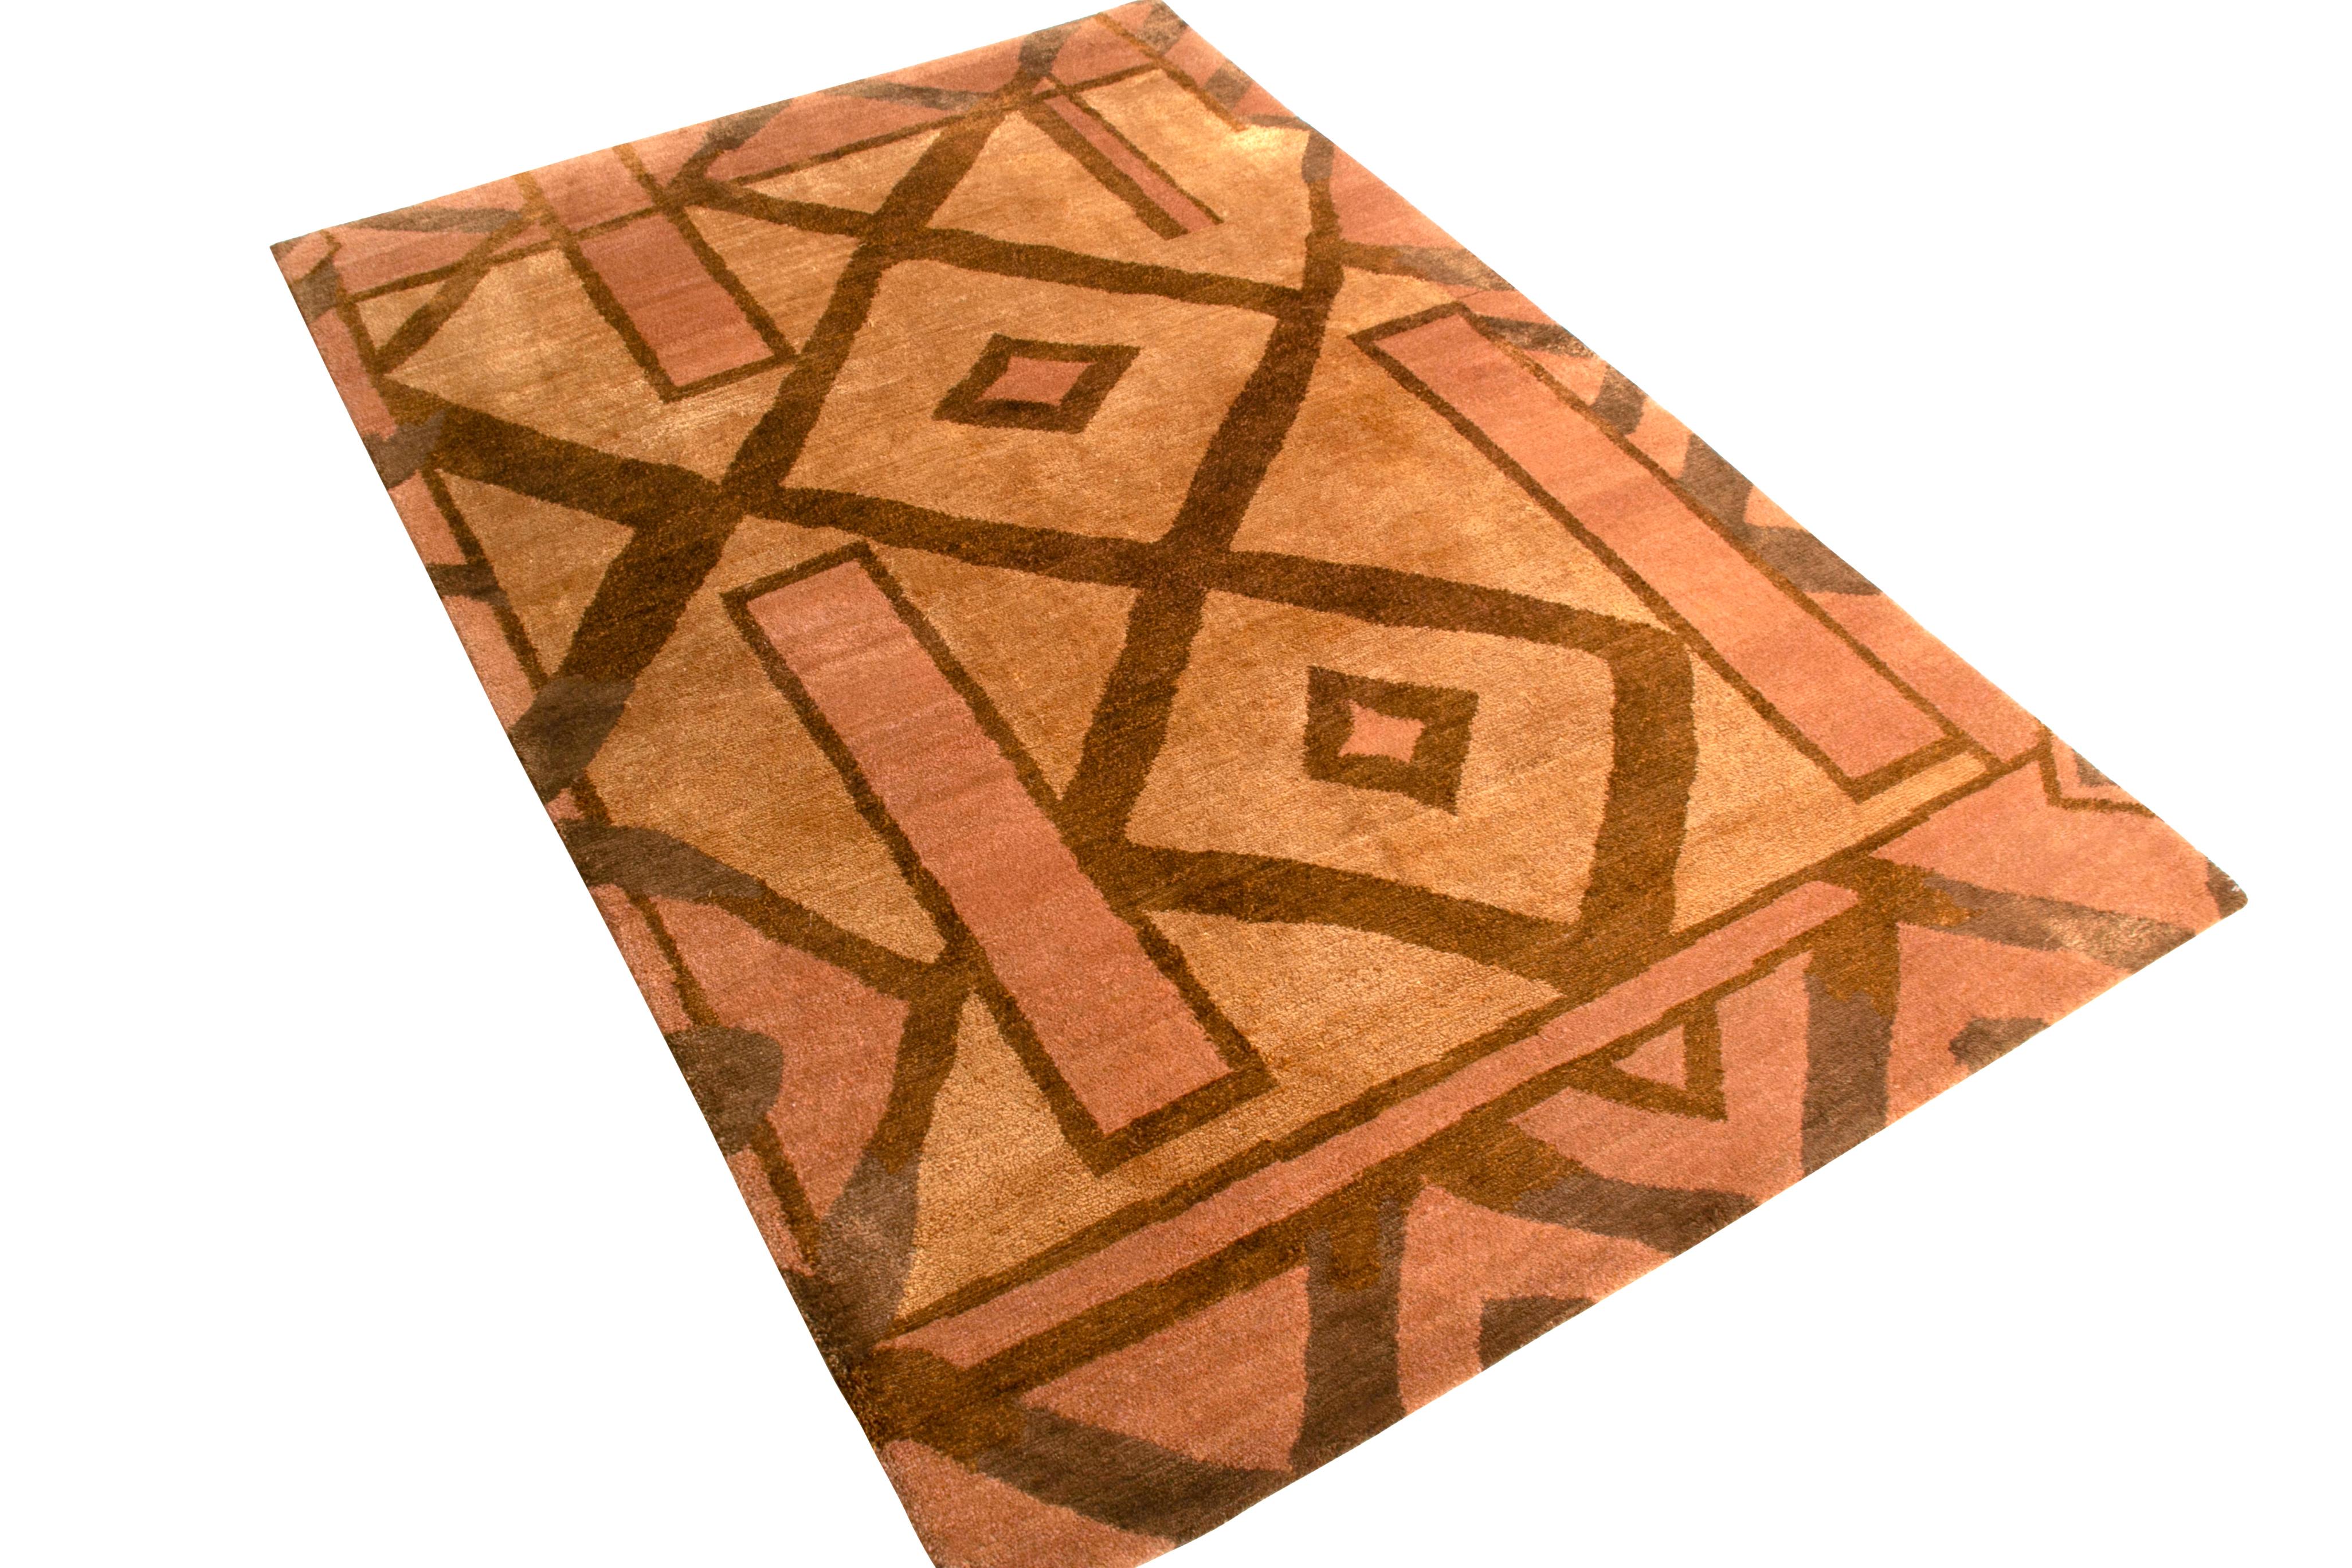 Dieser 4 x 6 große Teppich aus der New & Modern Collection'S von Rug & Kilim ist aus Wolle und Seide handgeknüpft und lässt sich von kubistischen Mustern inspirieren, wobei er eine moderne Farbperspektive einnimmt. Die leuchtenden Beige- und